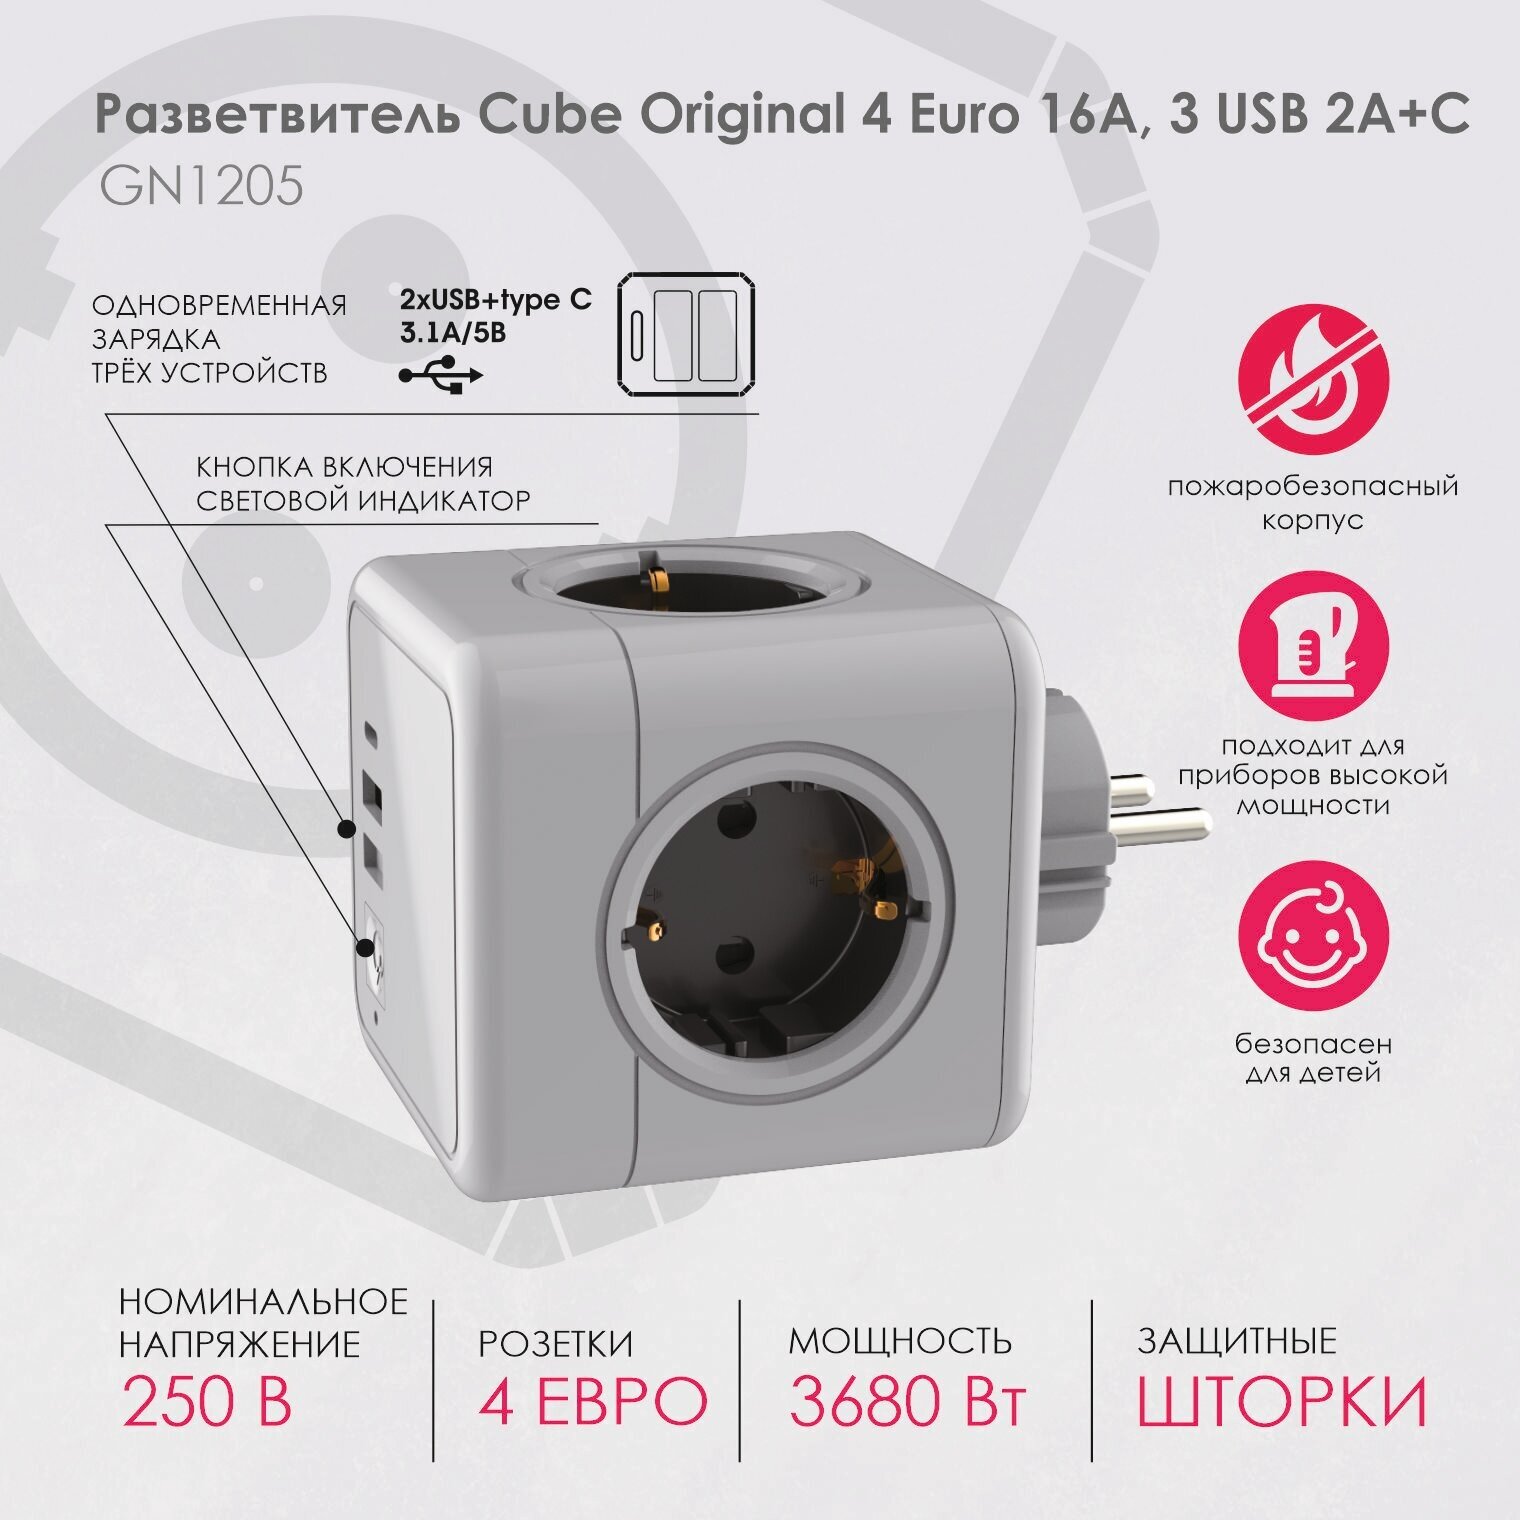 GN1205 Разветвитель Cube Original 4 Euro 16A, 3 USB 2A+C с блоком 5В/3.0А RocketSocket, цвет белый-серый Ливолотач - фотография № 2